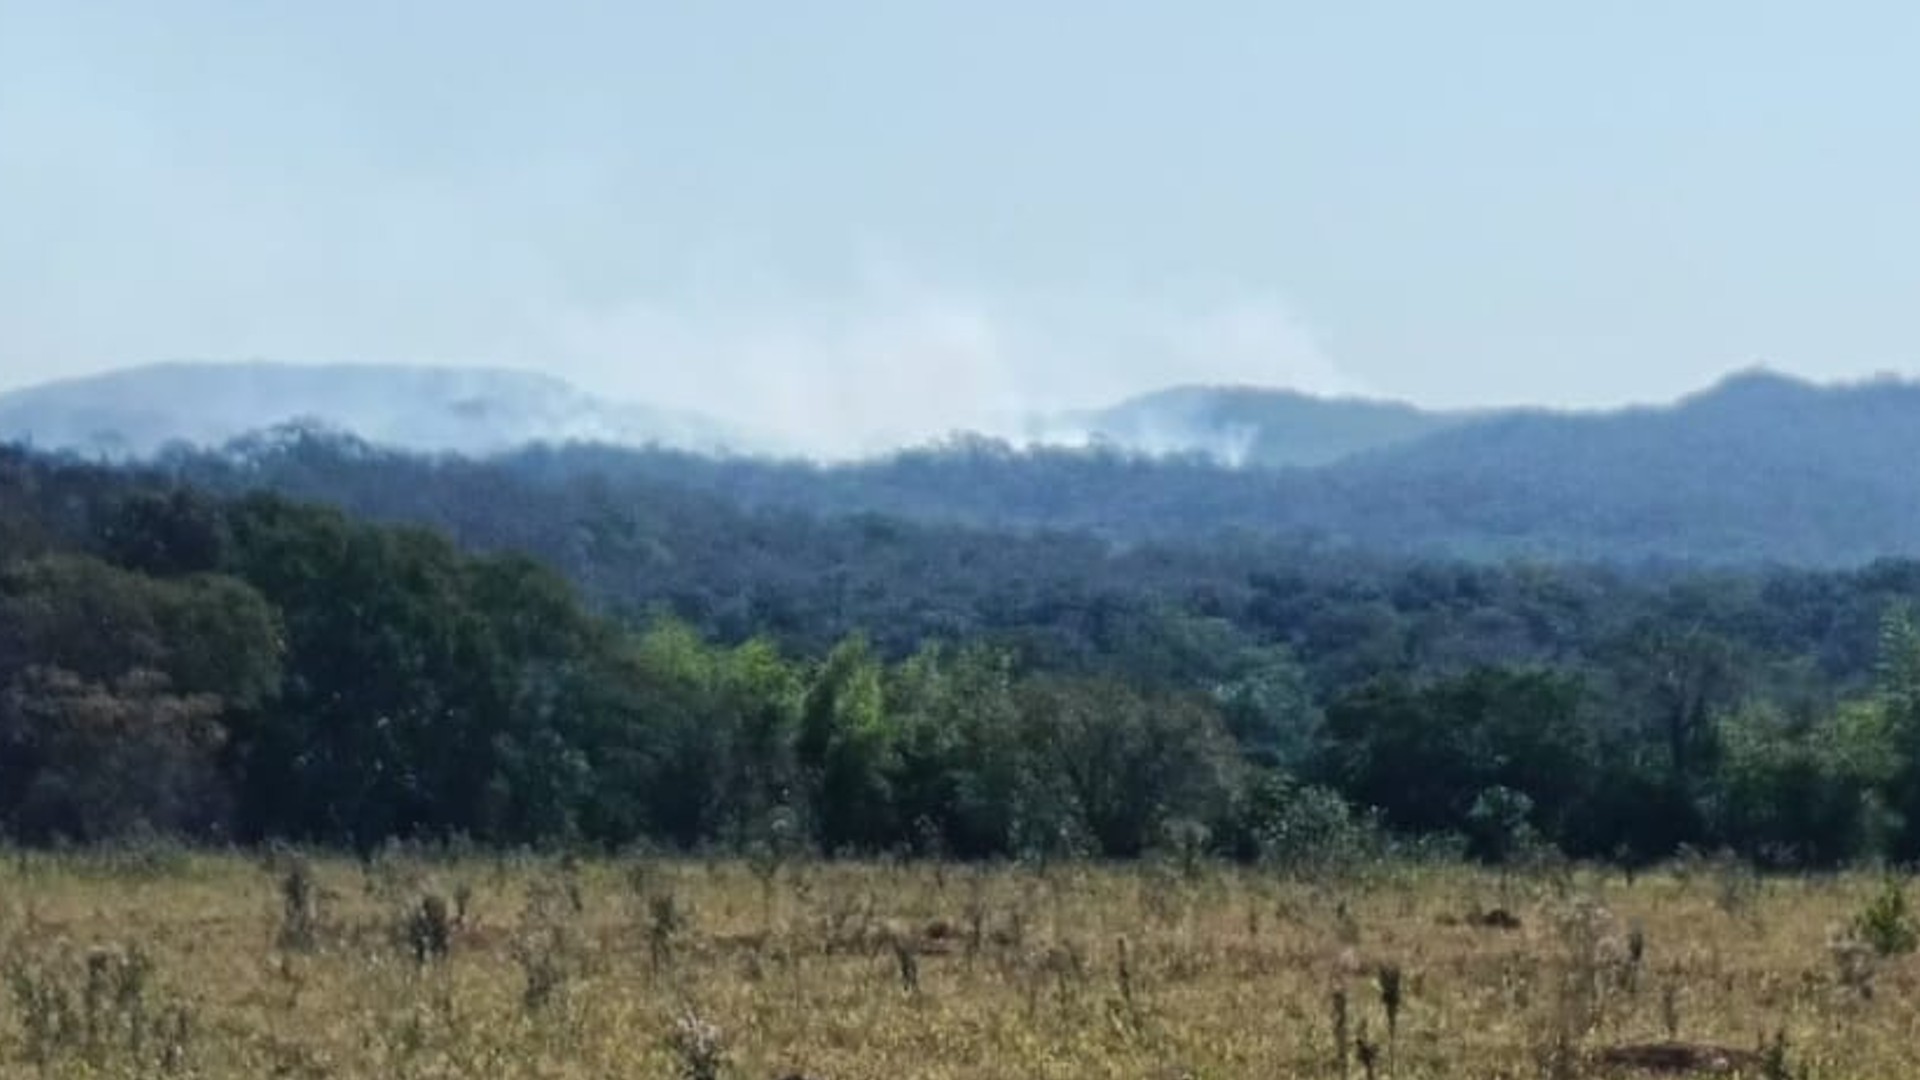 Bombeiros combatem incêndio florestal próximo à rodovia com acesso a Bonito (MS); veja vídeo